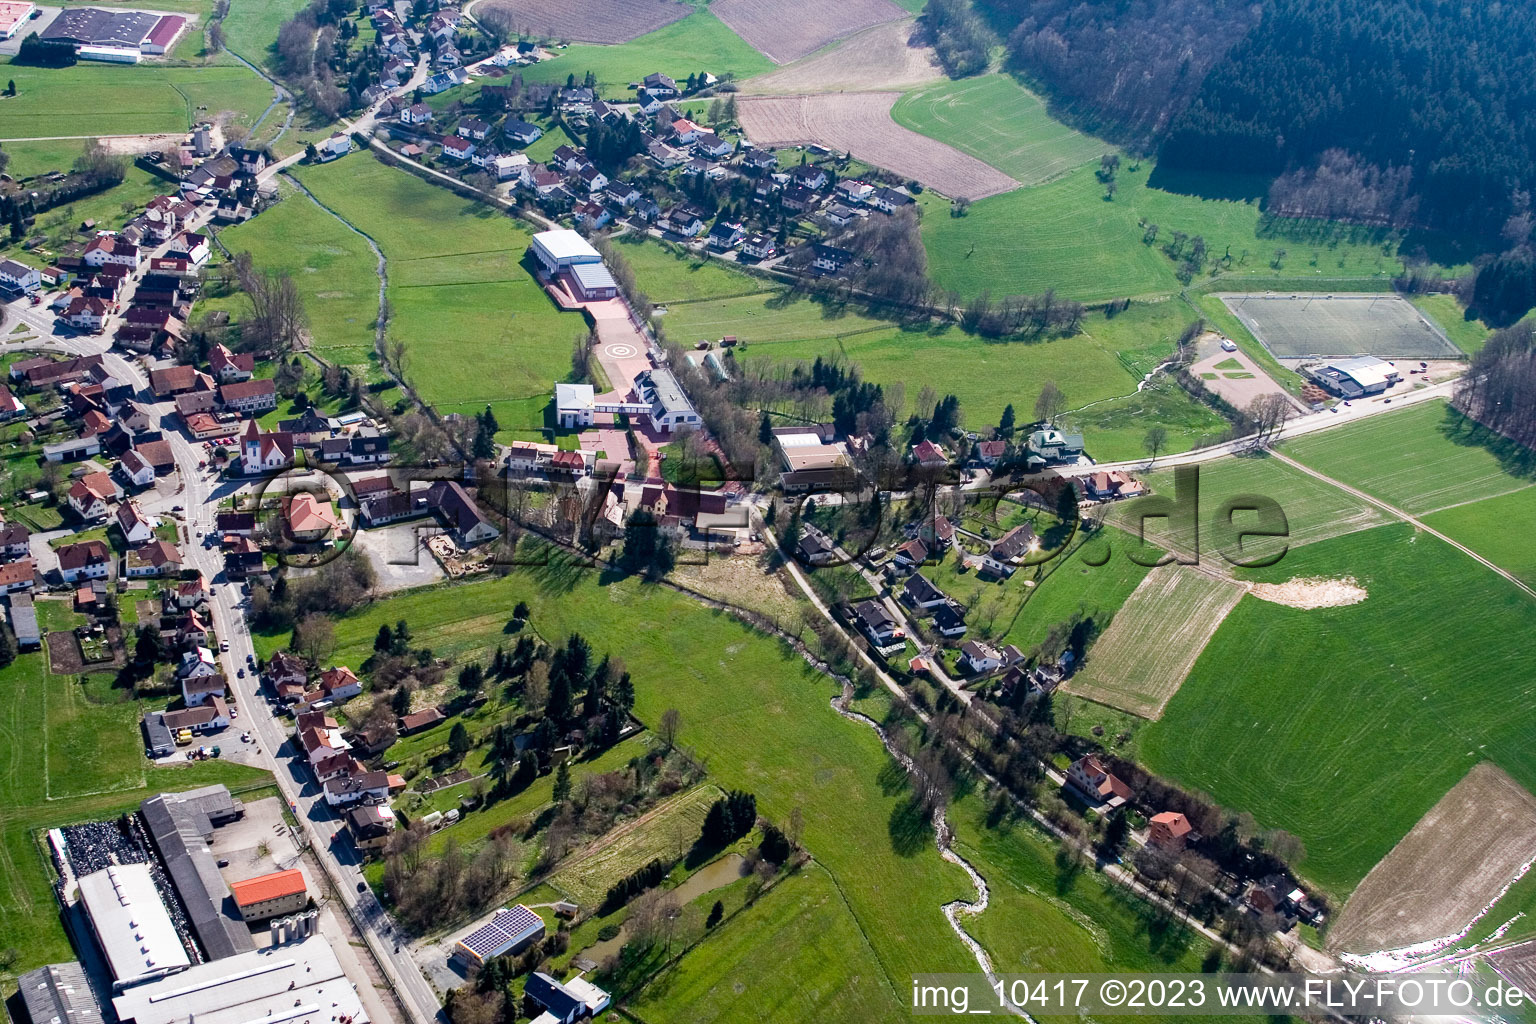 Affolterbach im Bundesland Hessen, Deutschland aus der Drohnenperspektive